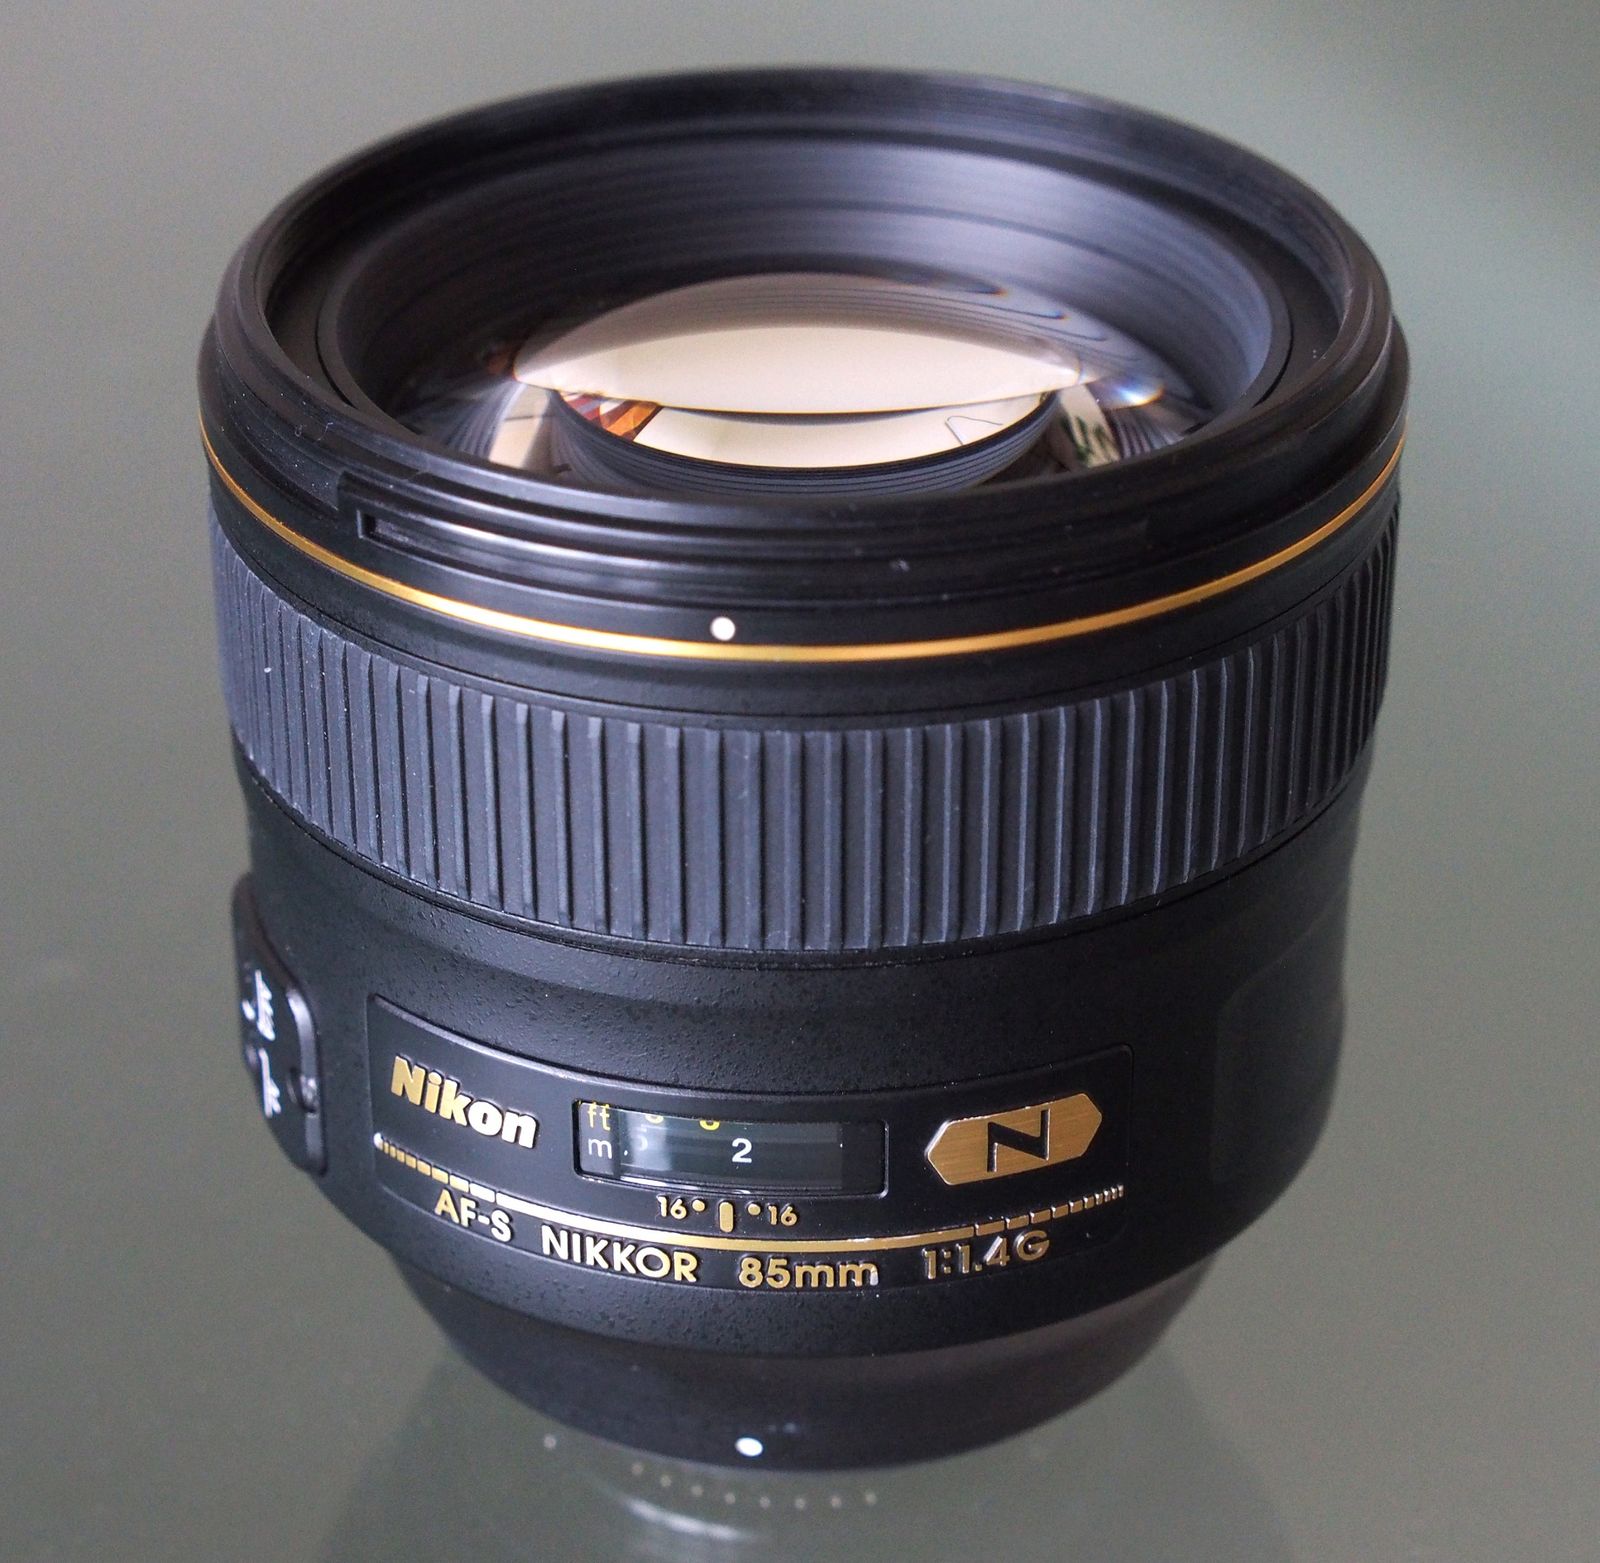 Nikon AF-S Nikkor 85mm f/1.4G Interchangeable Lens Review